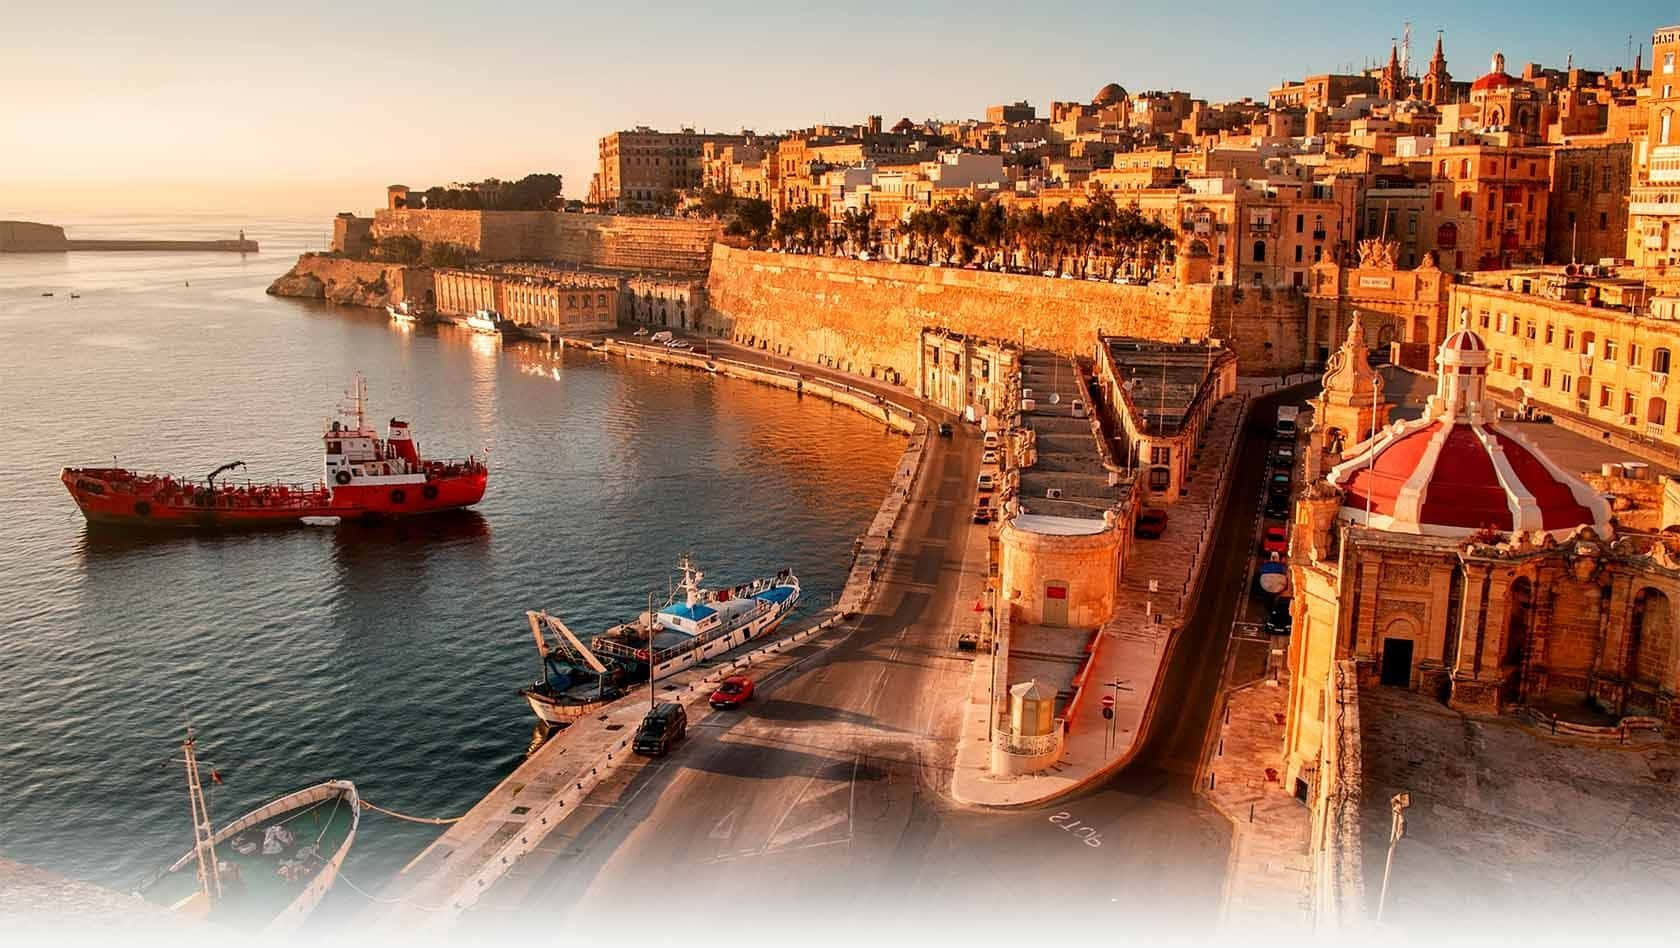 Scenic View of the Maltese Coastline